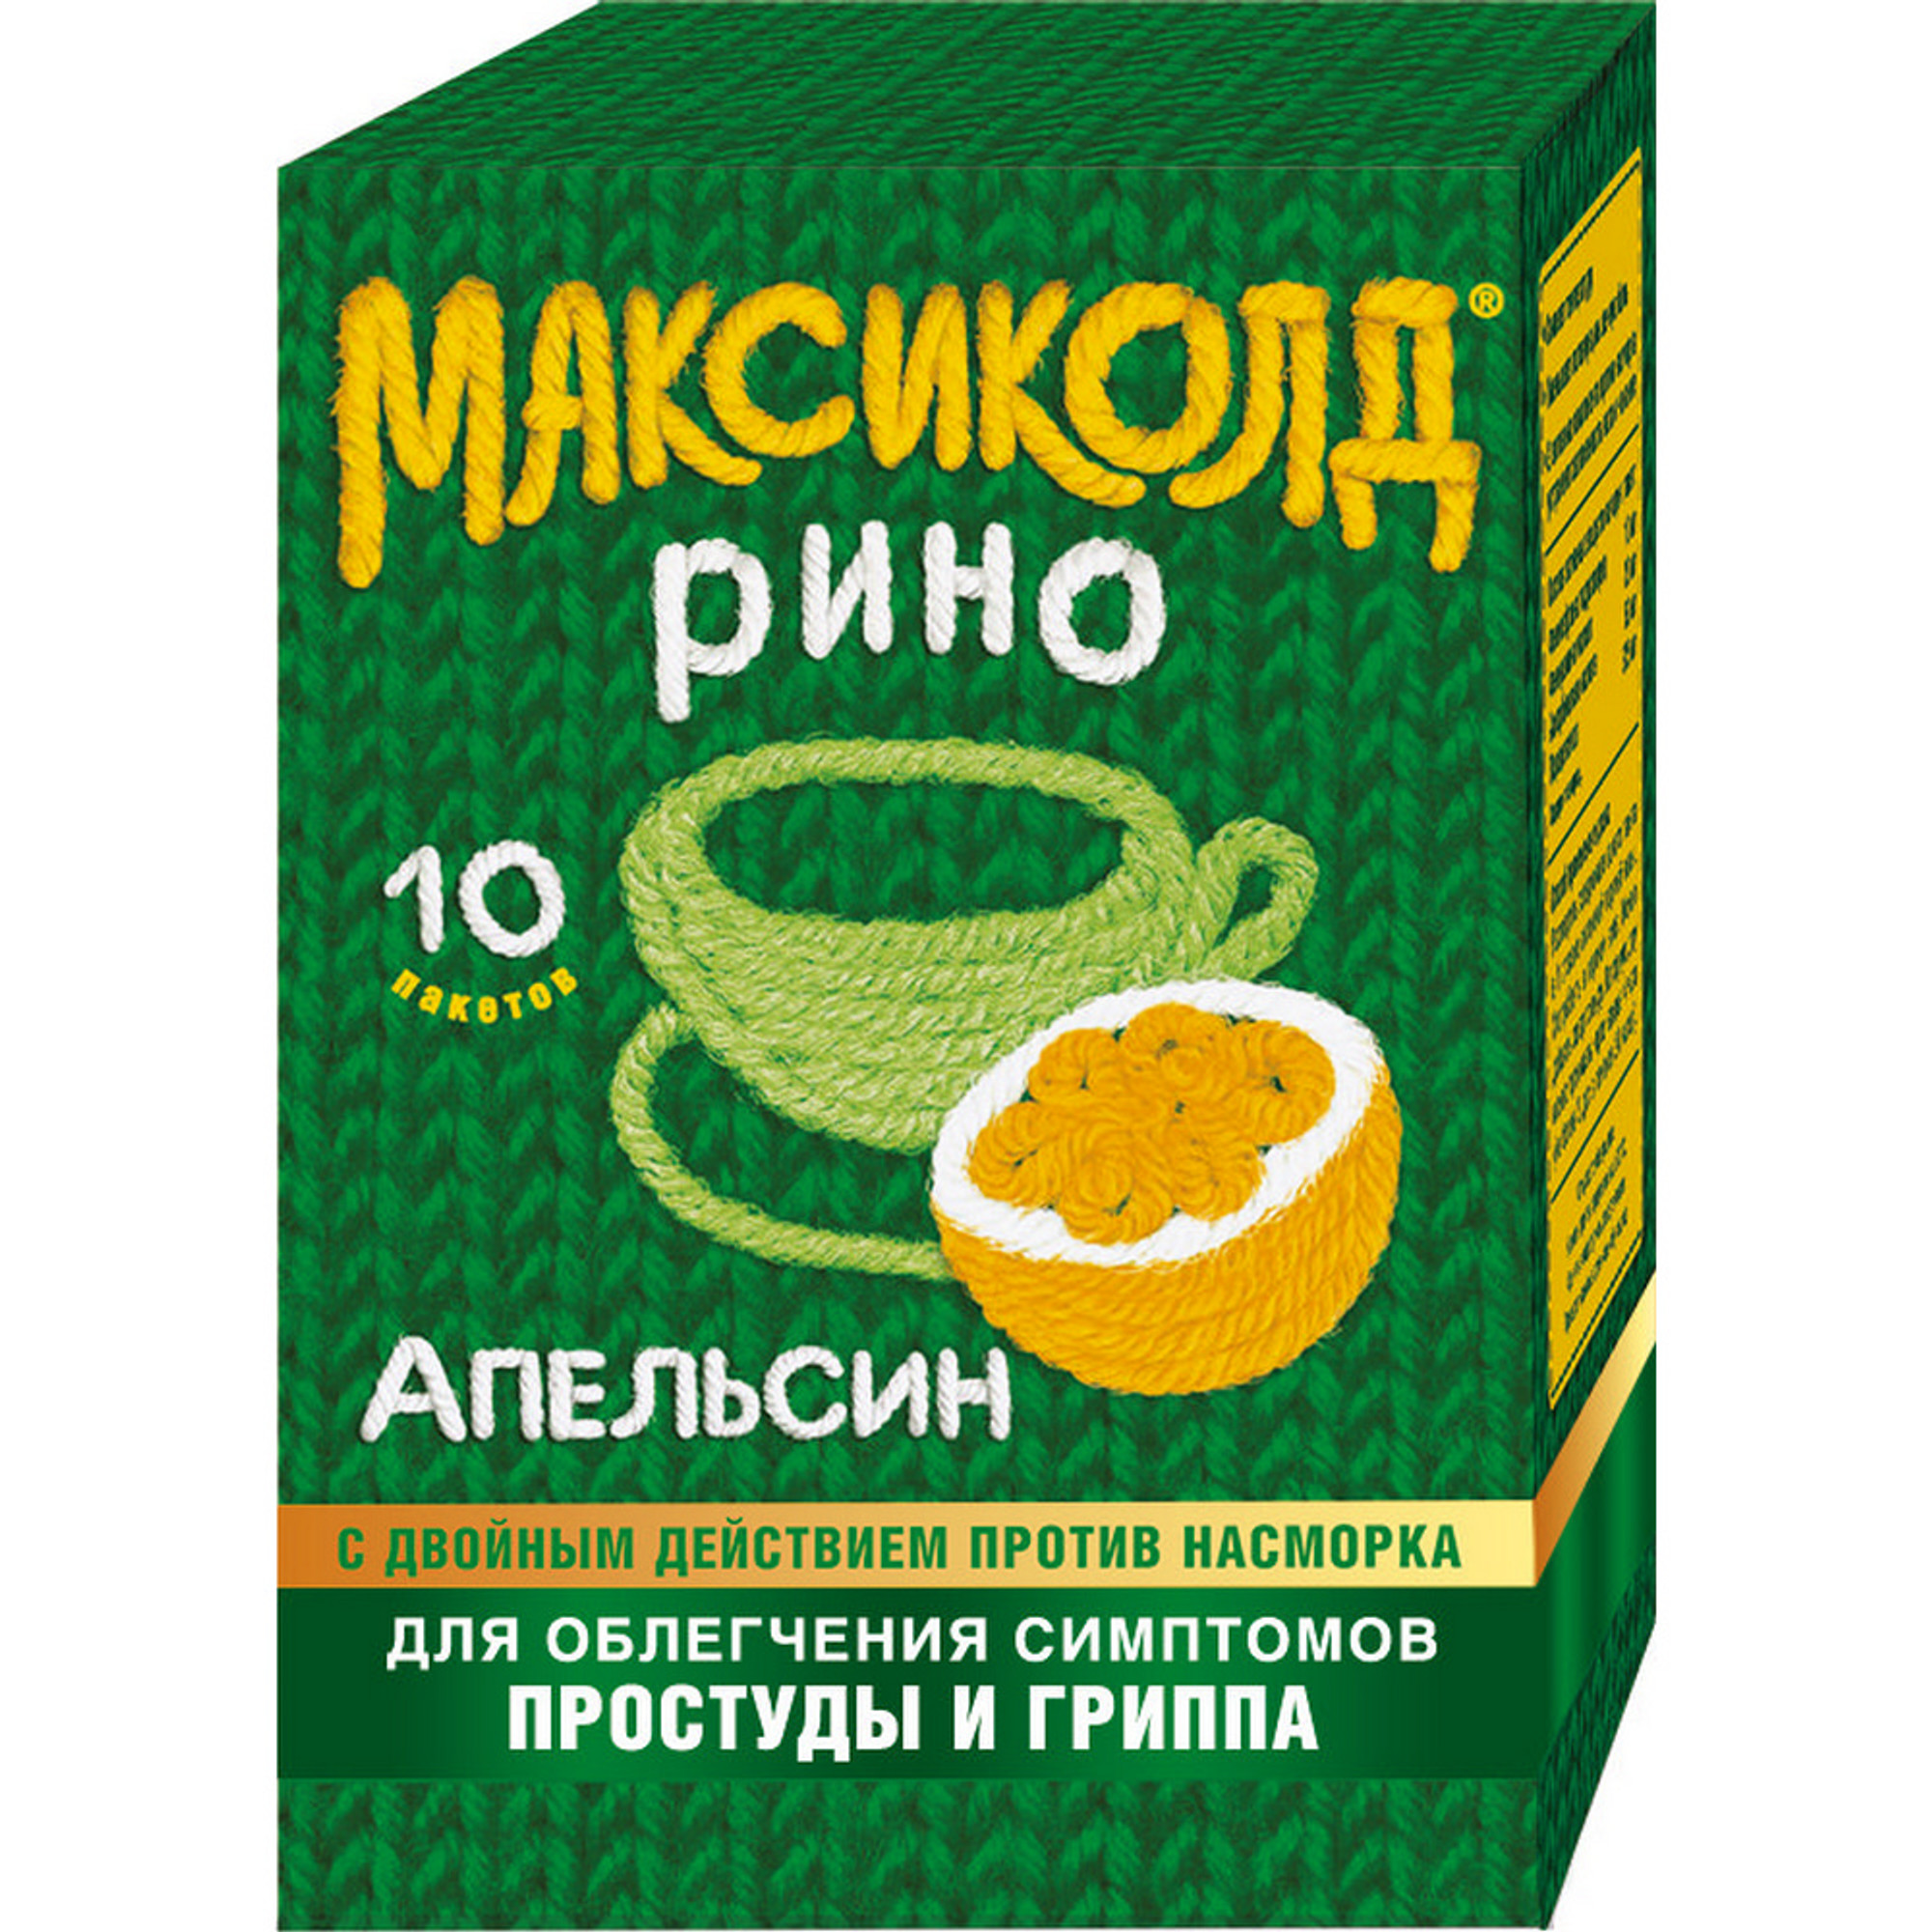 Максиколд Рино, порошок (апельсин), пакетики 15 г, 10 шт. максиколд рино порошок 15 г 10 шт лимон